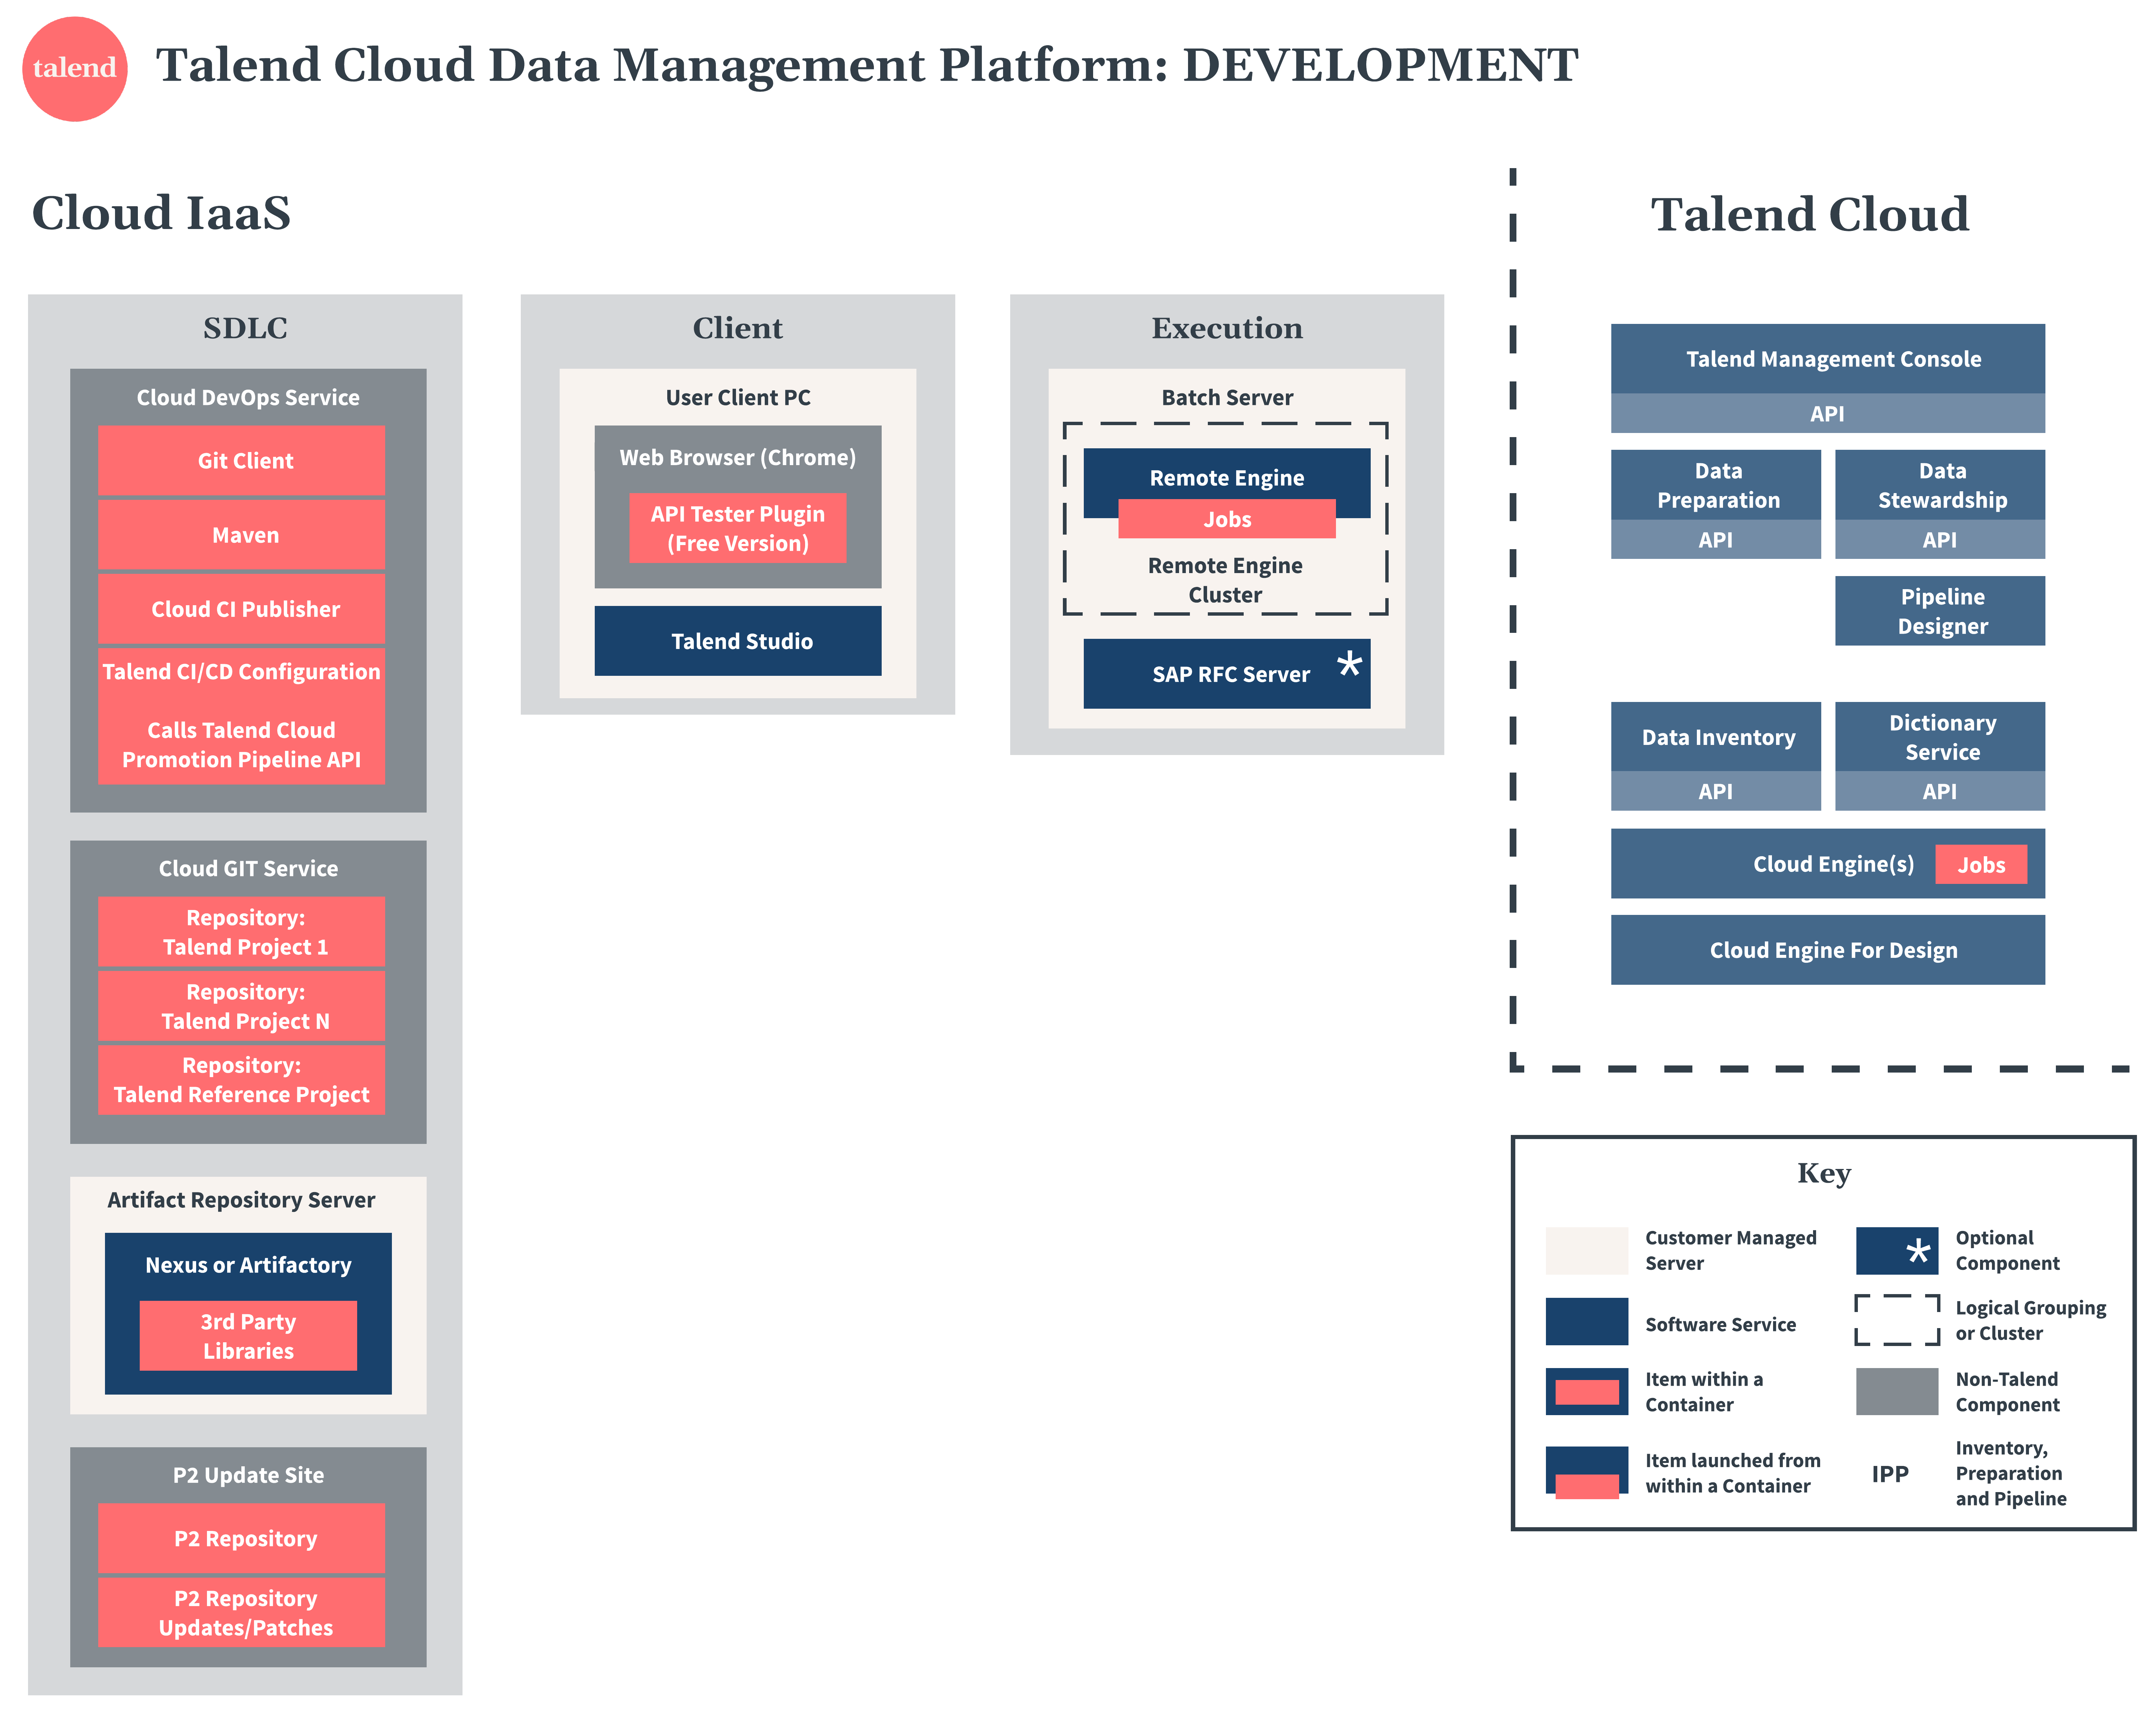 Talend Cloud Data Management Platform Diagramm zu Entwicklung.